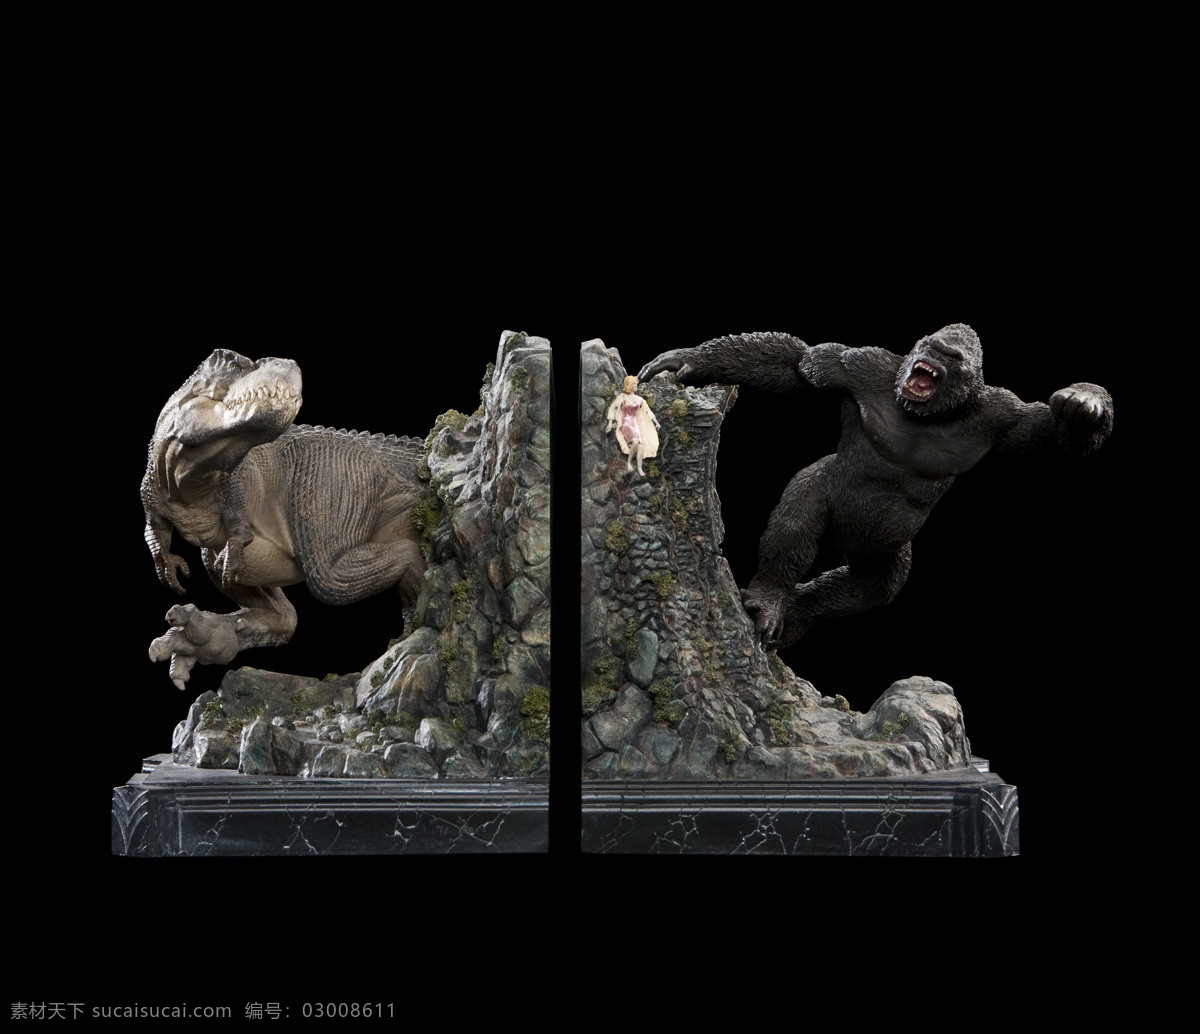 猩猩 大战 霸王龙 模型 手办 高清 生物世界 野生动物